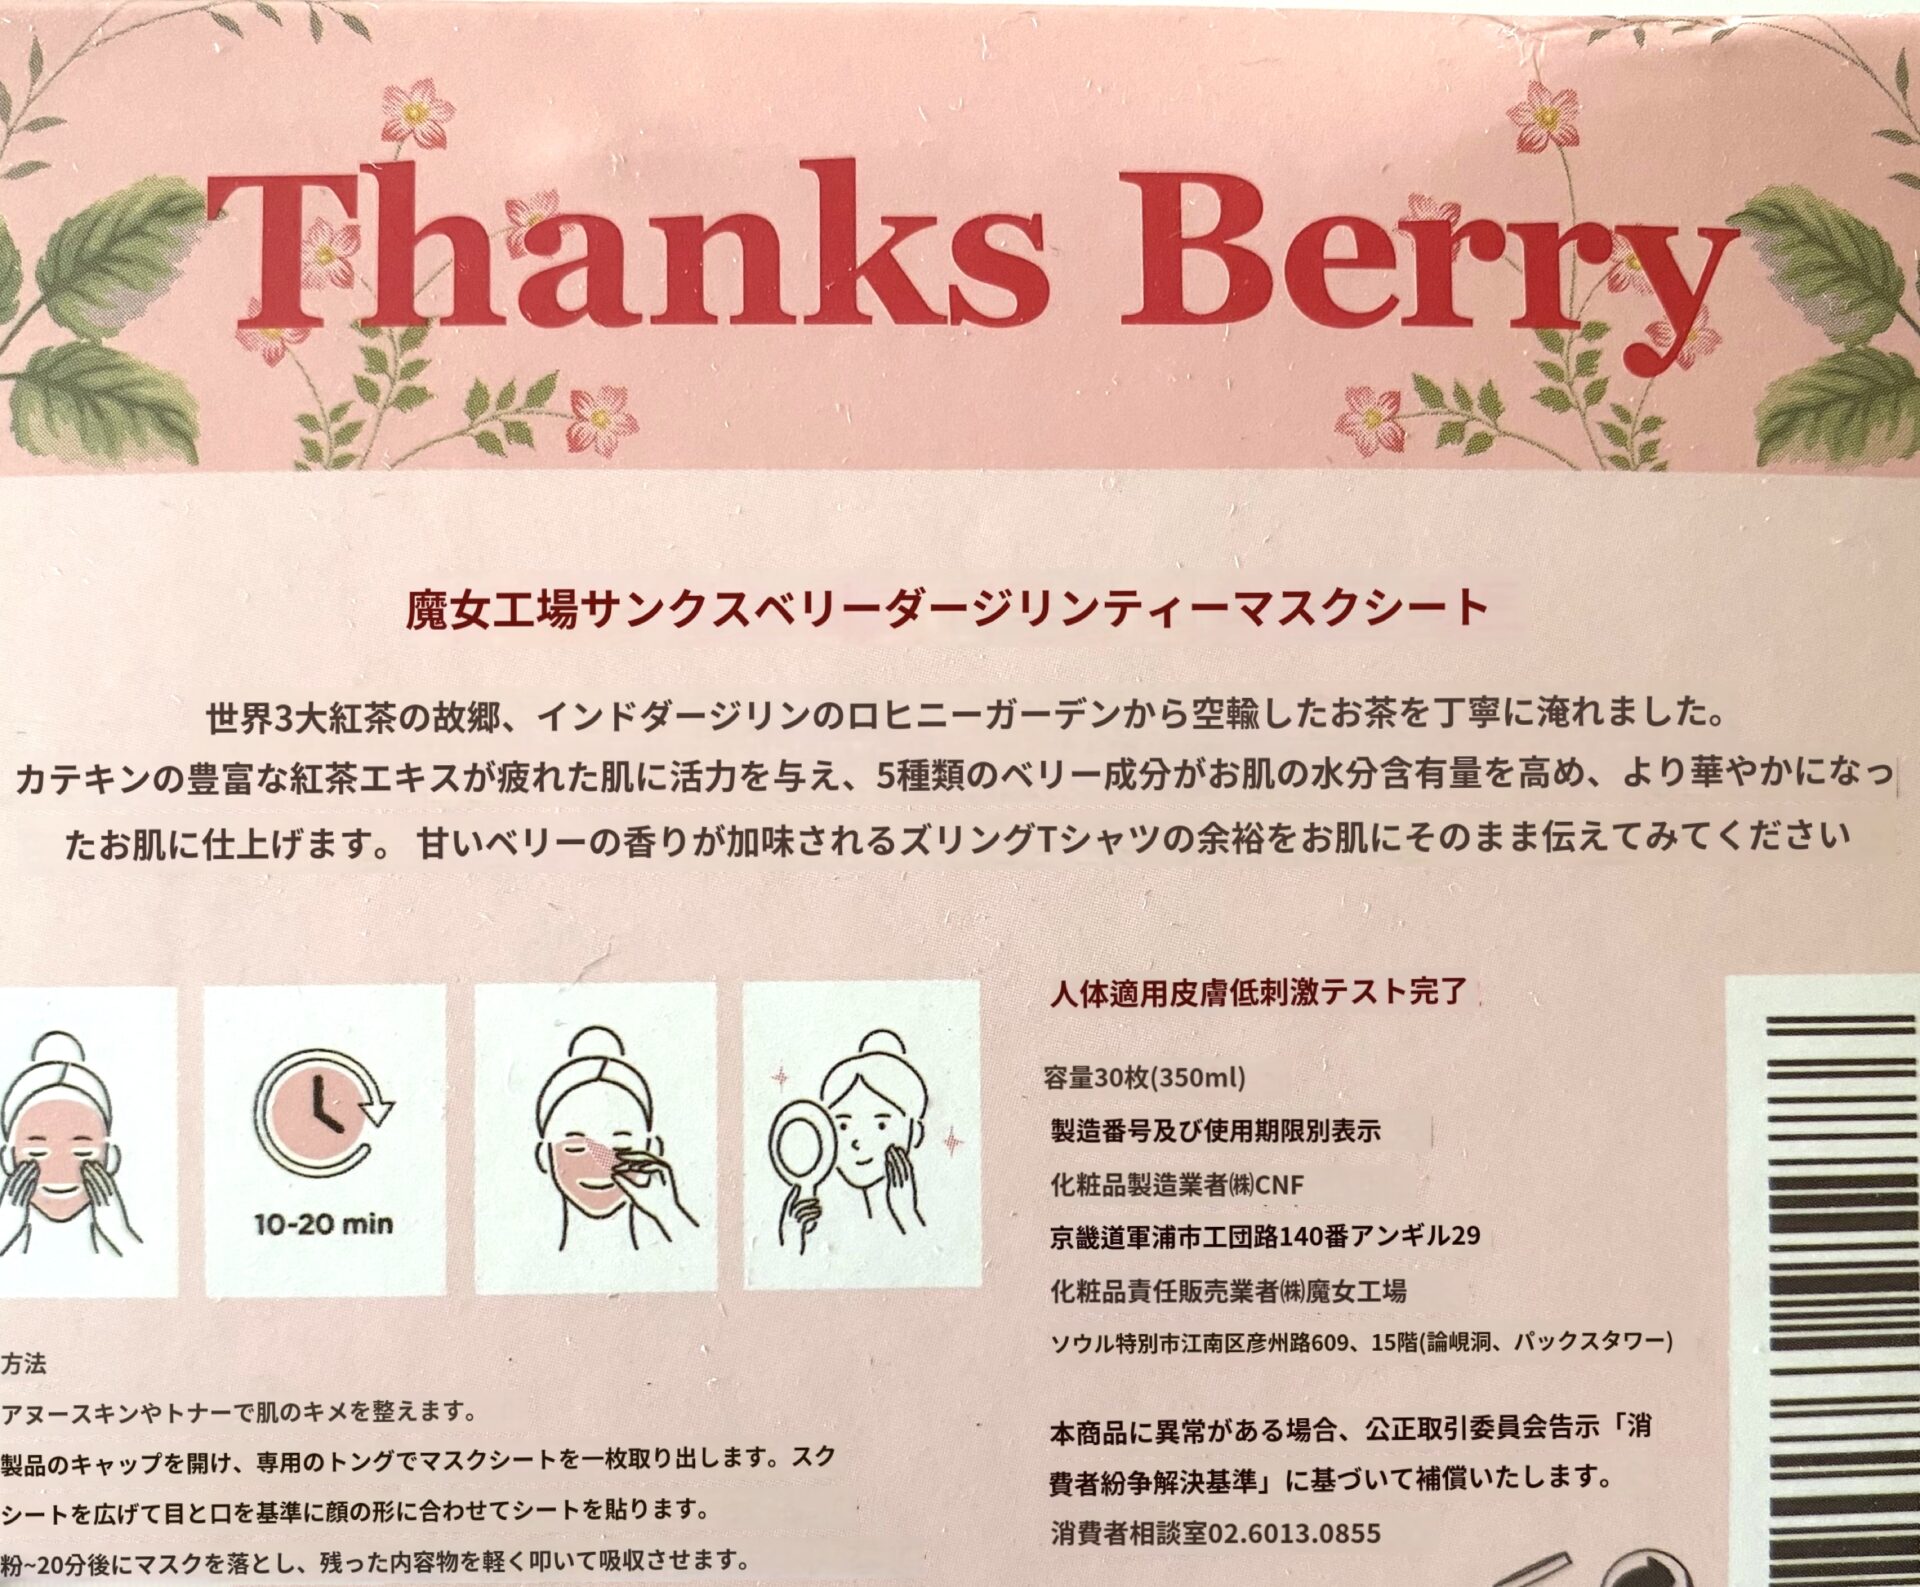 魔女工房「Thanks Berry ダージリンティー マスク」翻訳